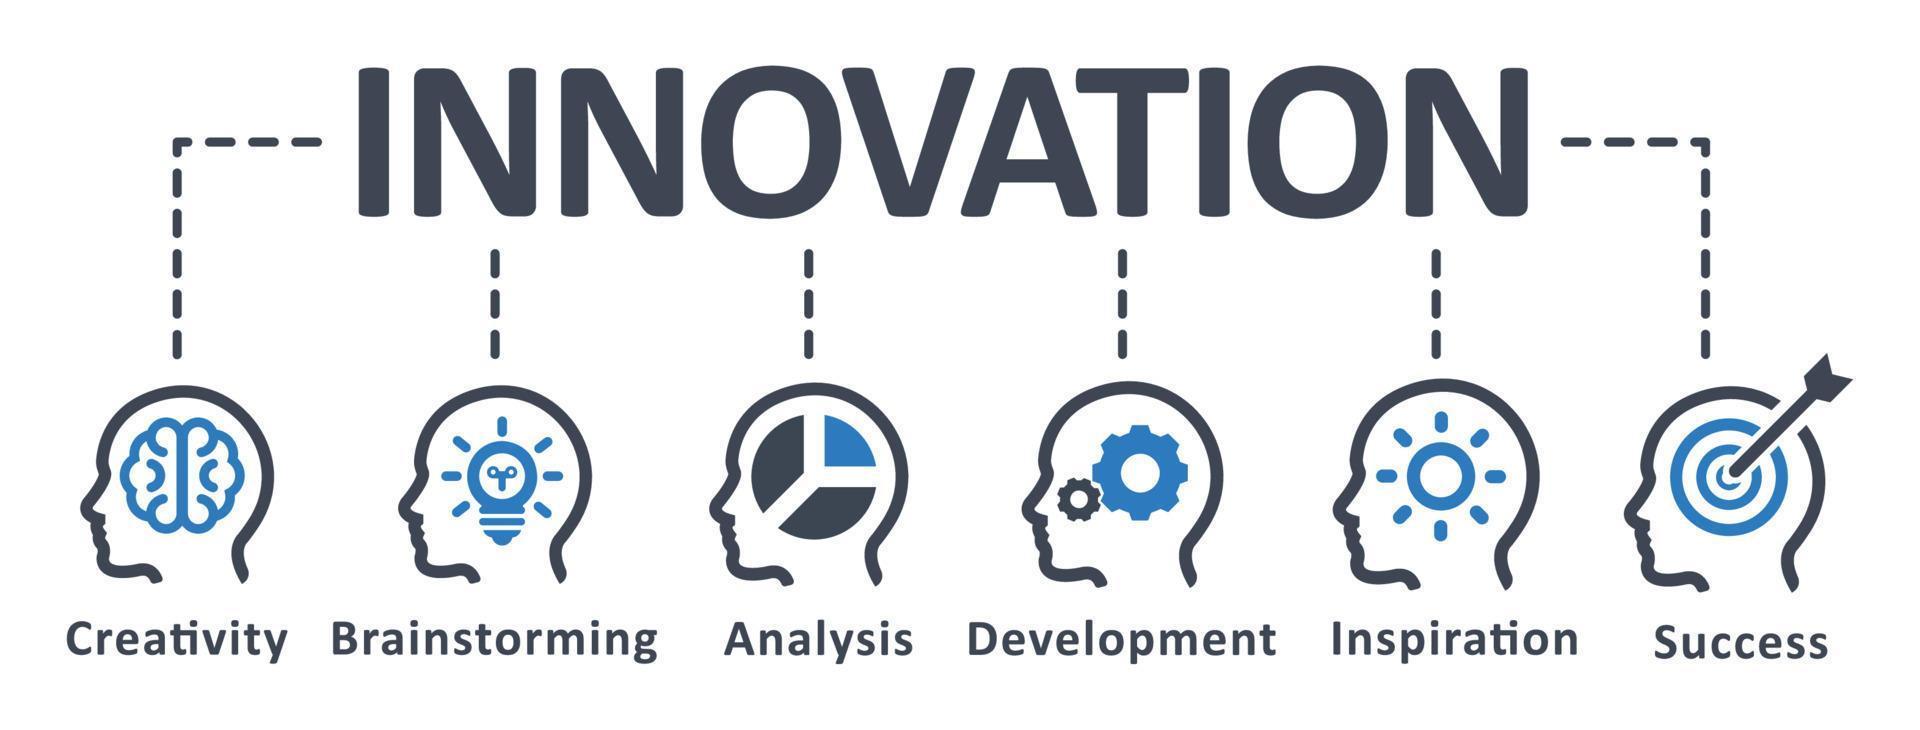 icona di innovazione - illustrazione vettoriale. innovazione, sviluppo, ricerca, infografica, modello, presentazione, concetto, banner, pittogramma, set di icone, icone. vettore